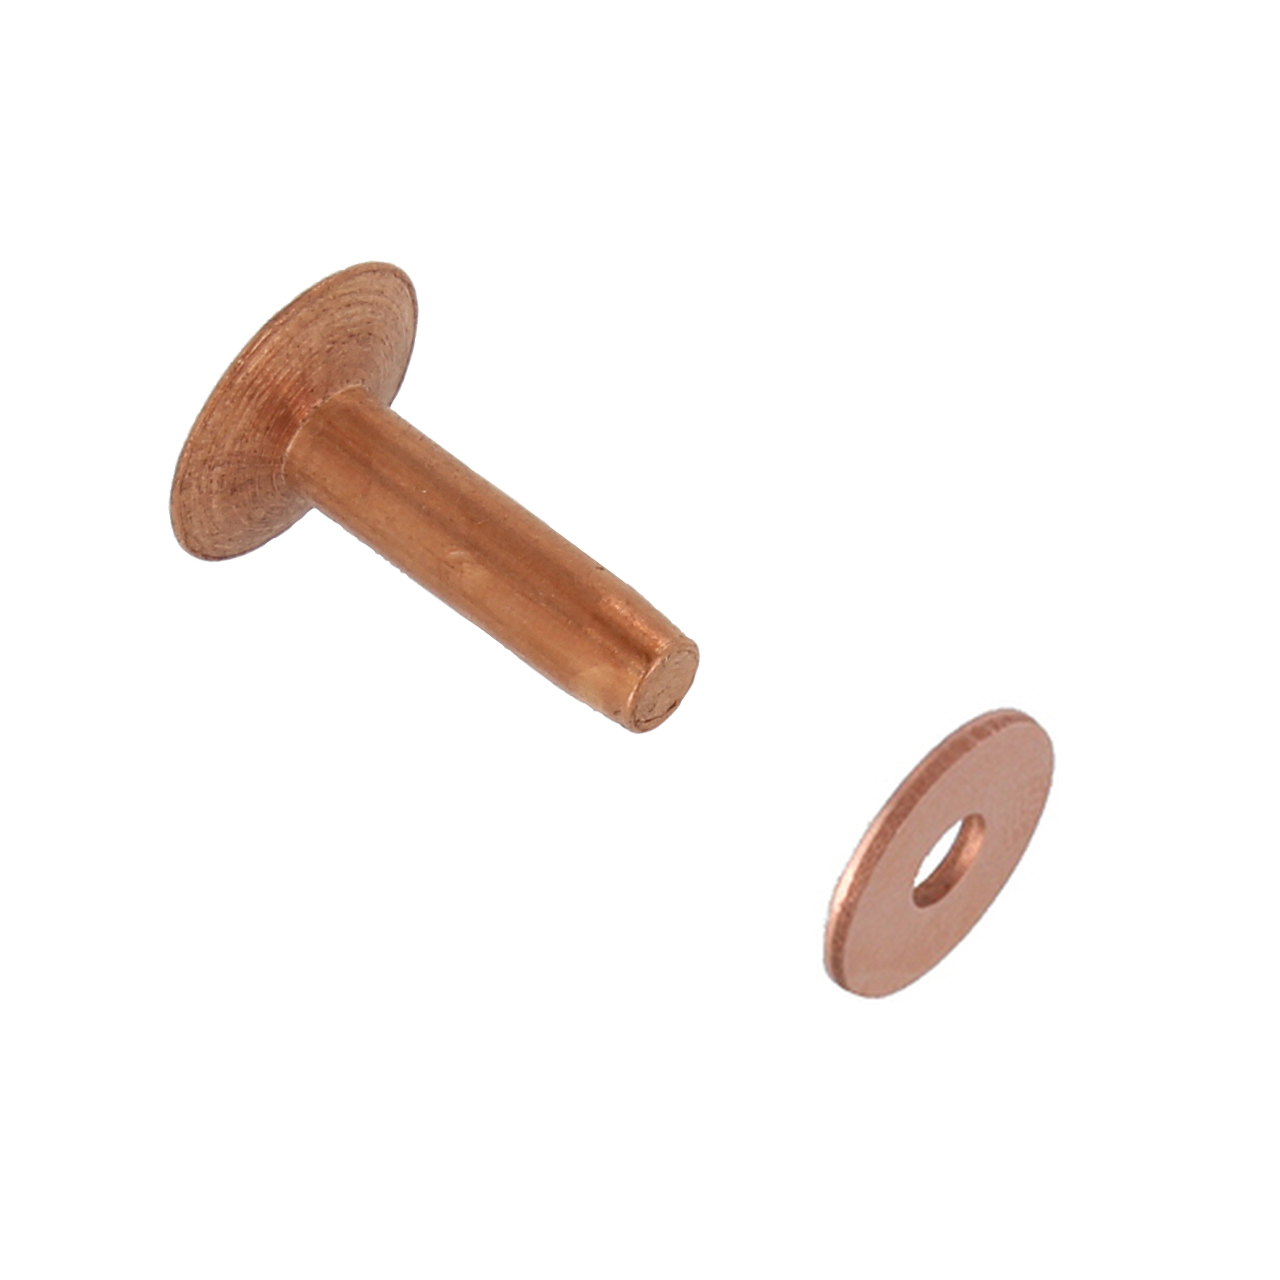 1/16 Dia. 1/8 Long Copper Rivet (50pcs.) - Metal Clay & Crafted